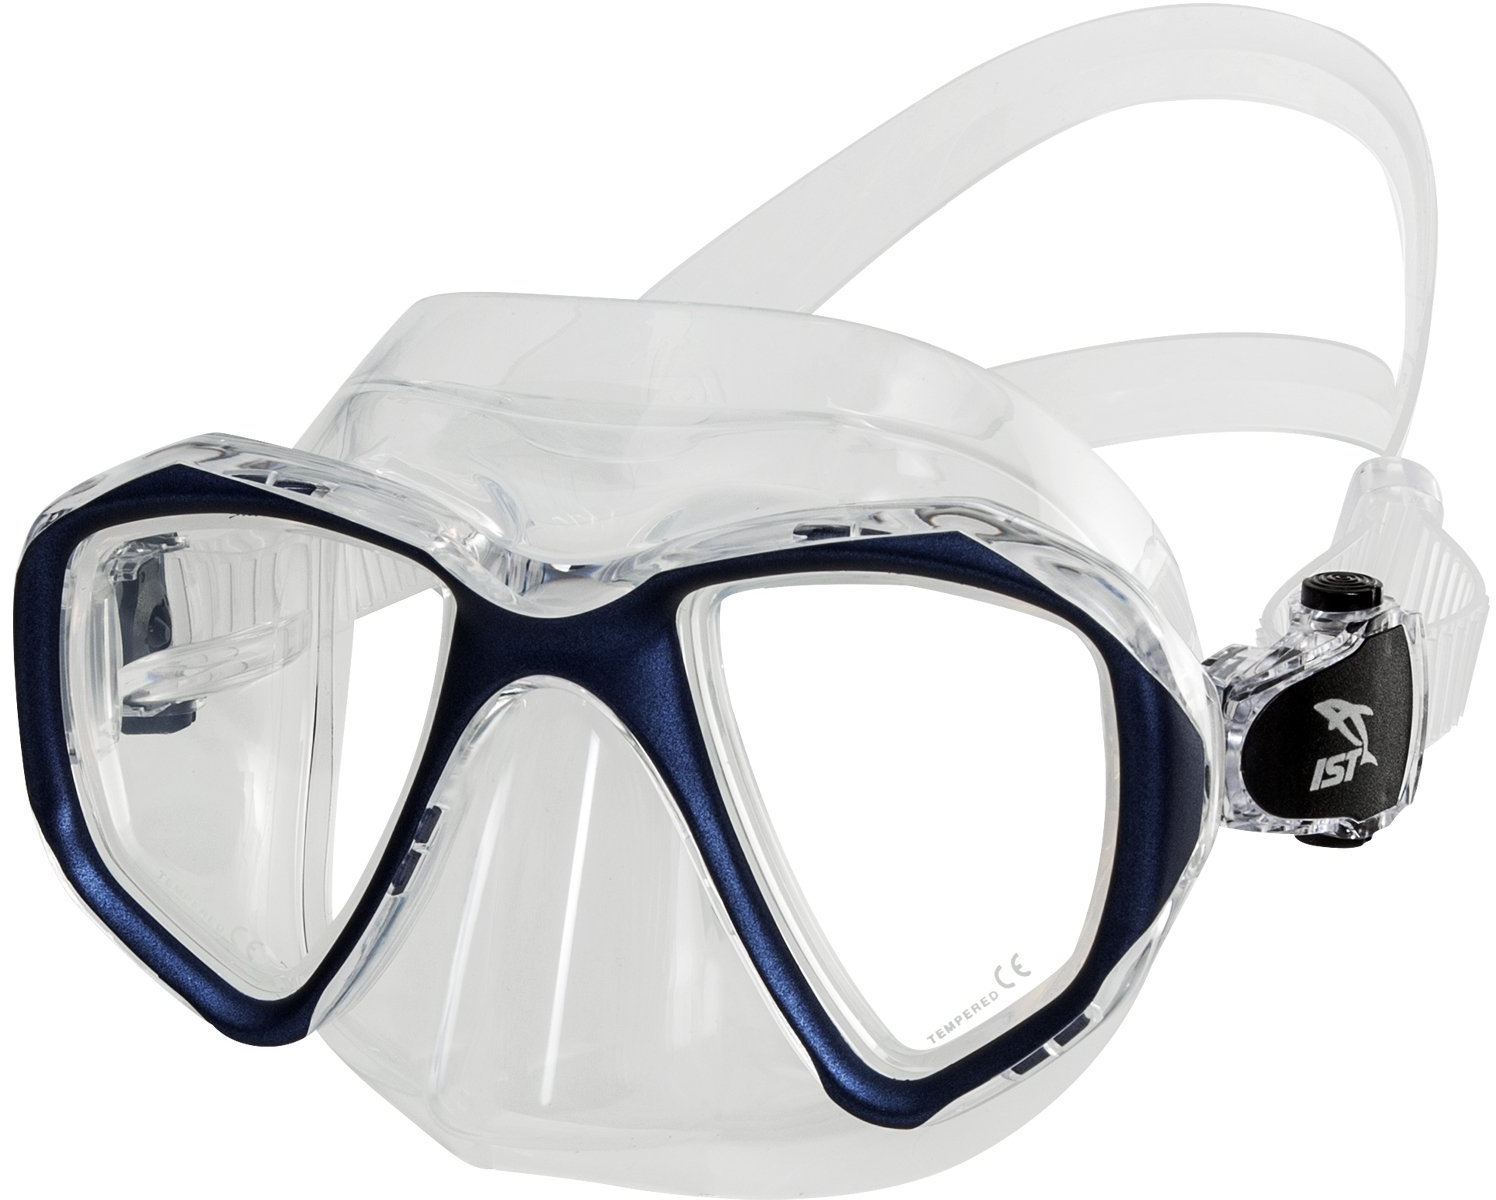 IST MP201 Proteus Dive Mask